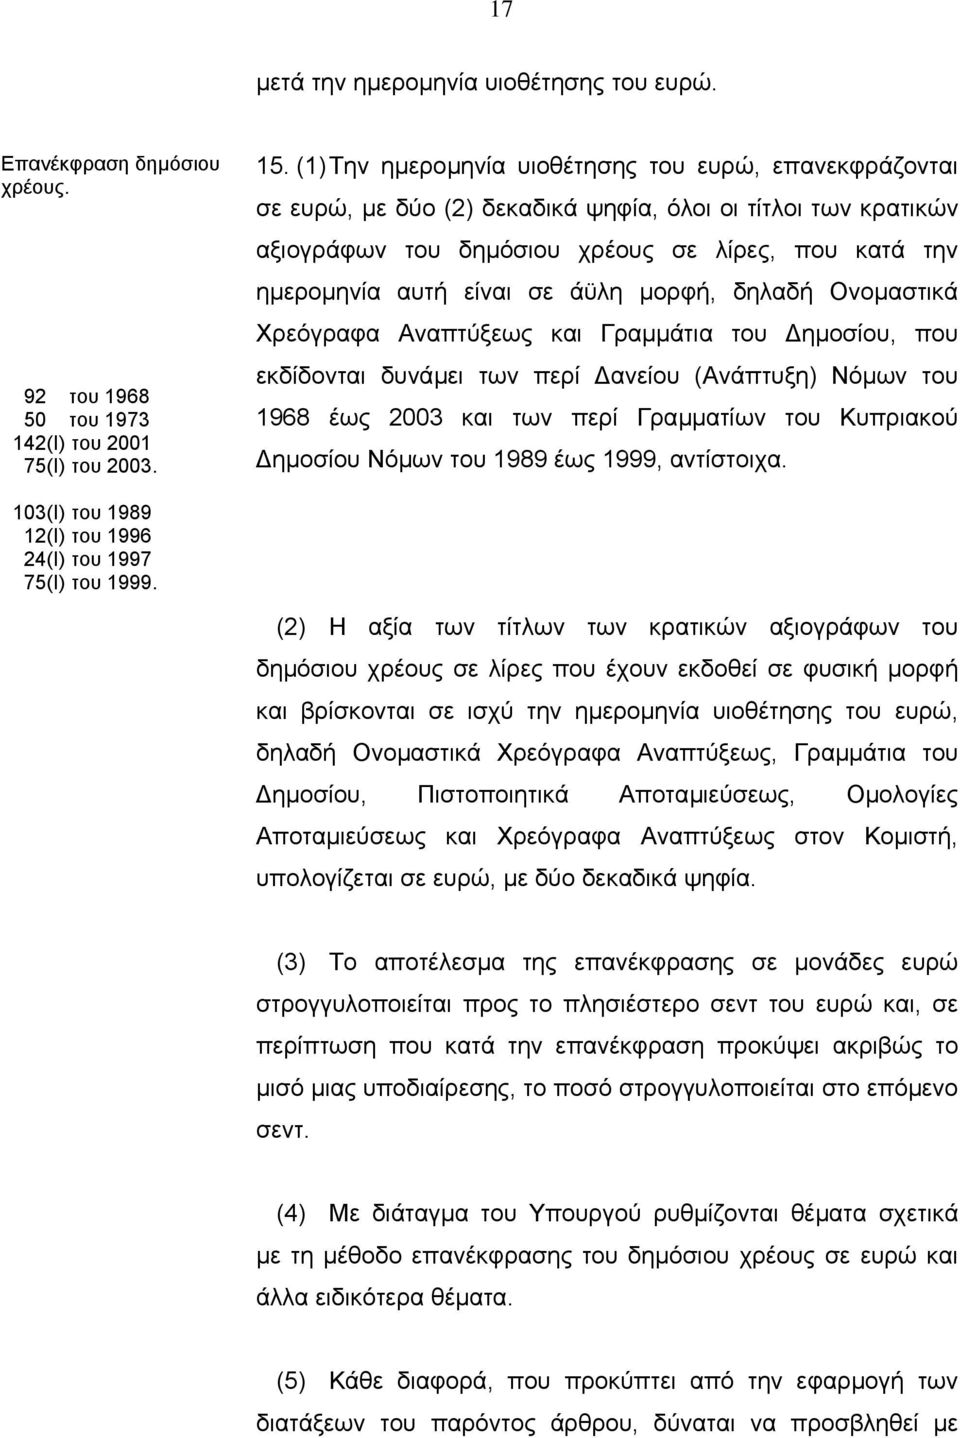 άϋλη µορφή, δηλαδή Ονοµαστικά Χρεόγραφα Αναπτύξεως και Γραµµάτια του ηµοσίου, που εκδίδονται δυνάµει των περί ανείου (Ανάπτυξη) Νόµων του 1968 έως 2003 και των περί Γραµµατίων του Κυπριακού ηµοσίου